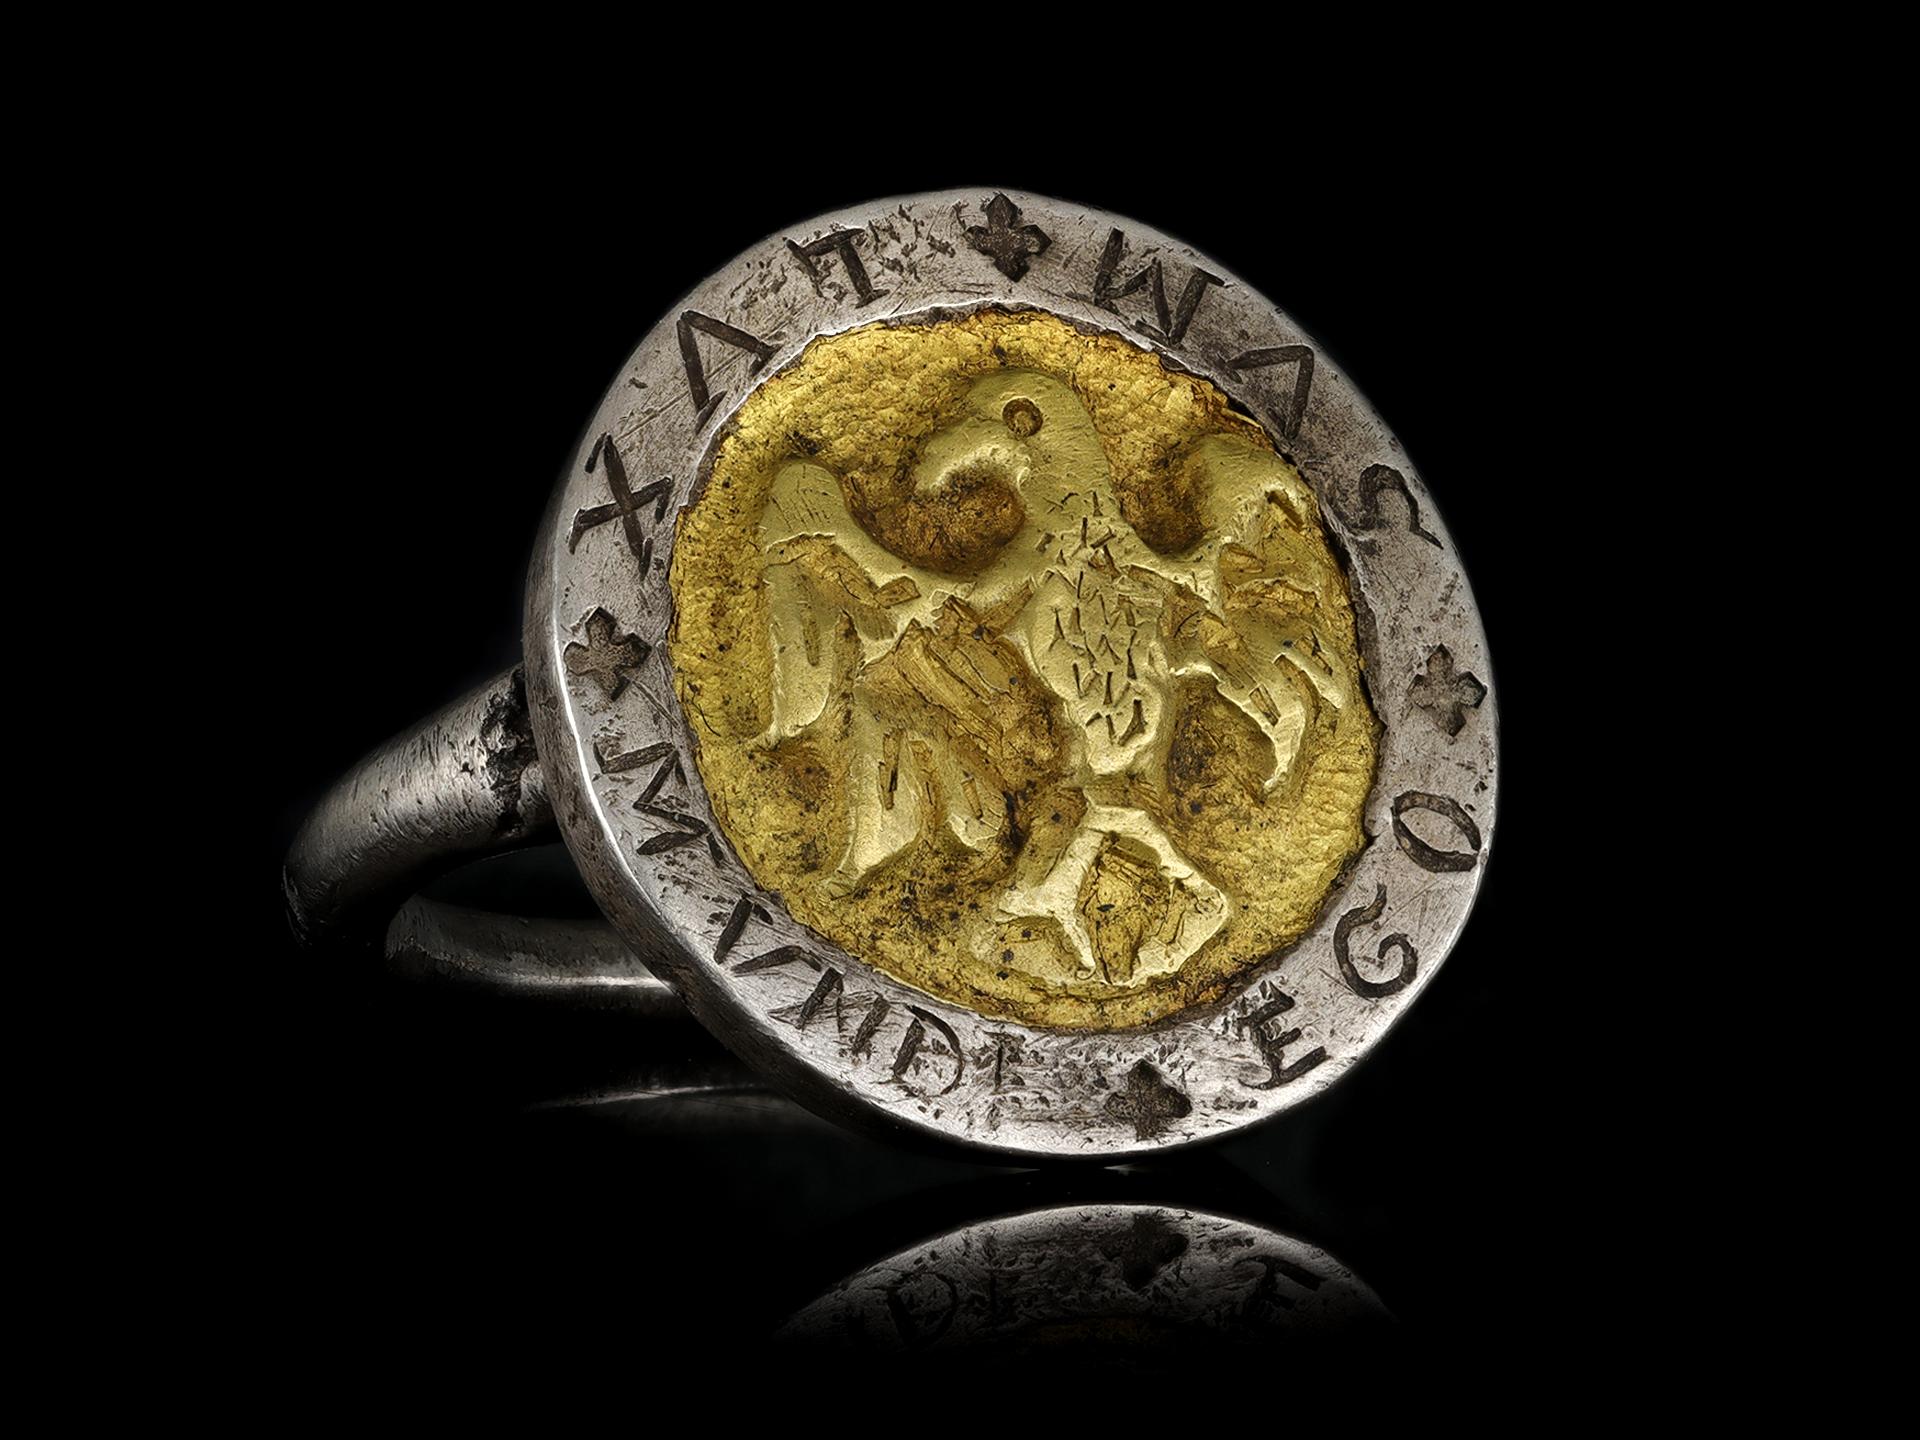 Postmittelalterlicher Ring 'I AM THE LIGHT OF THE WORLD' mit Adler, um 17. Jahrhundert 1